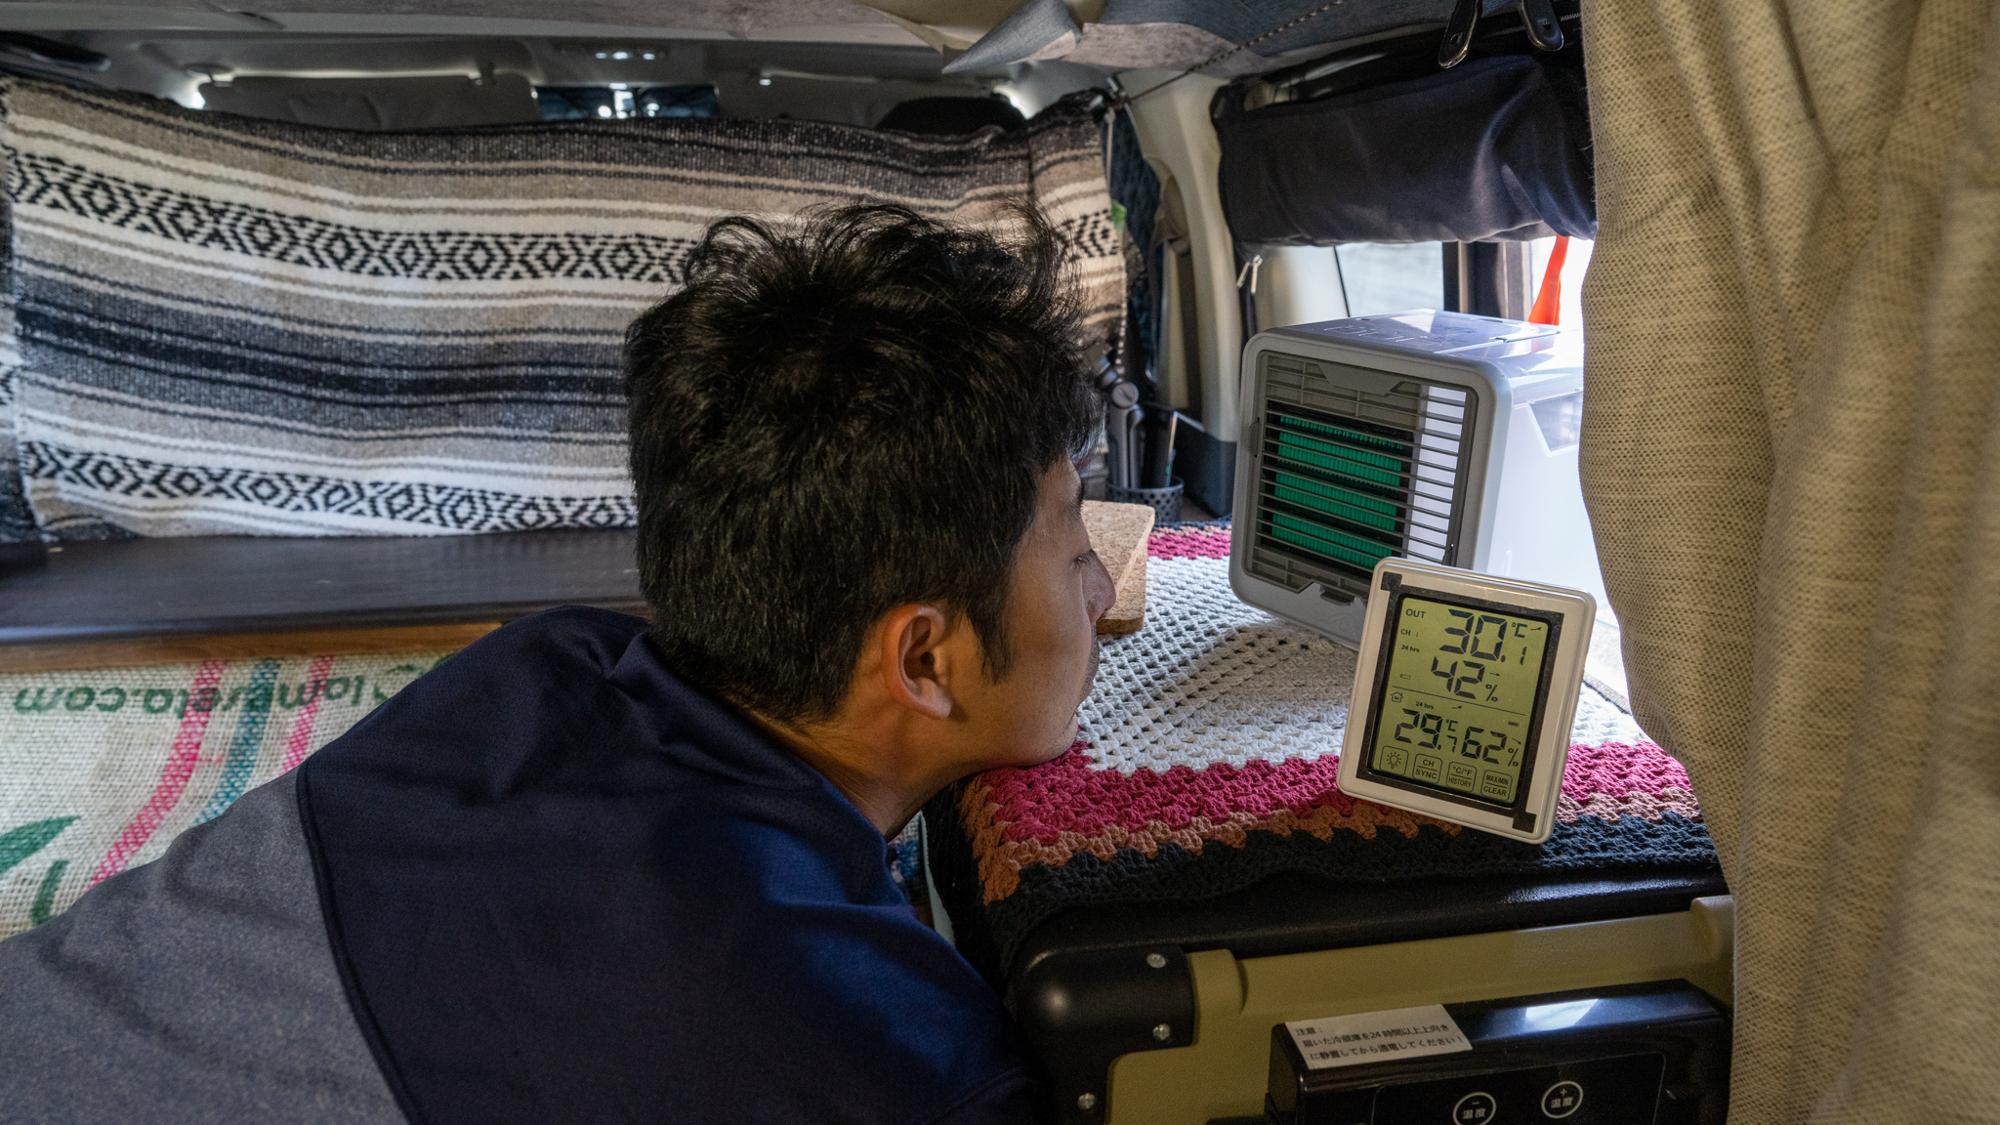 新型 ここひえr3 は車中泊の暑さ対策に使えるのか 検証してみた 18 Kagaribi Yahoo Japan クリエイターズプログラム